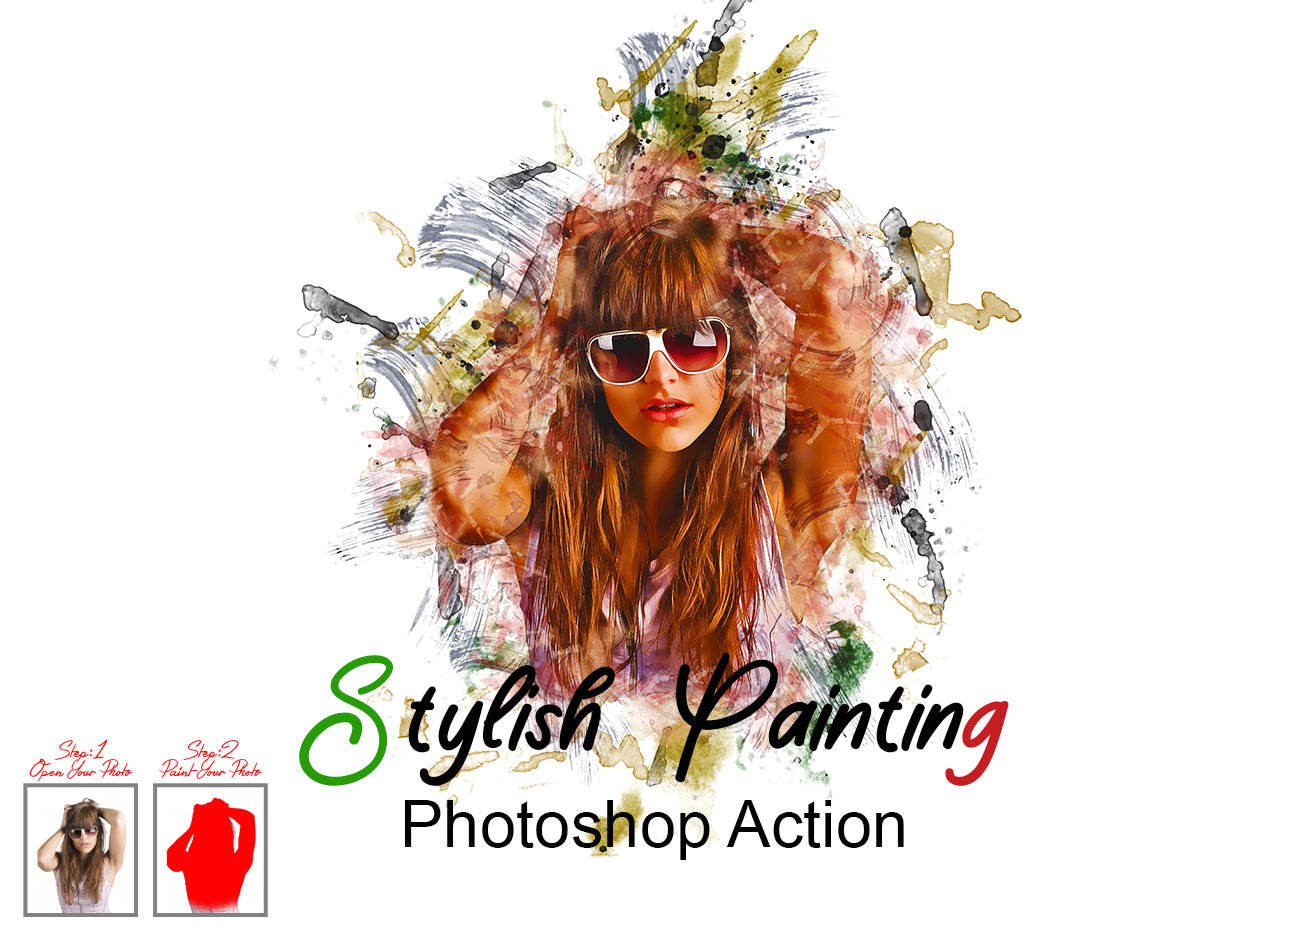 16 Smart Effects Photoshop Actions Bundle - Artixty